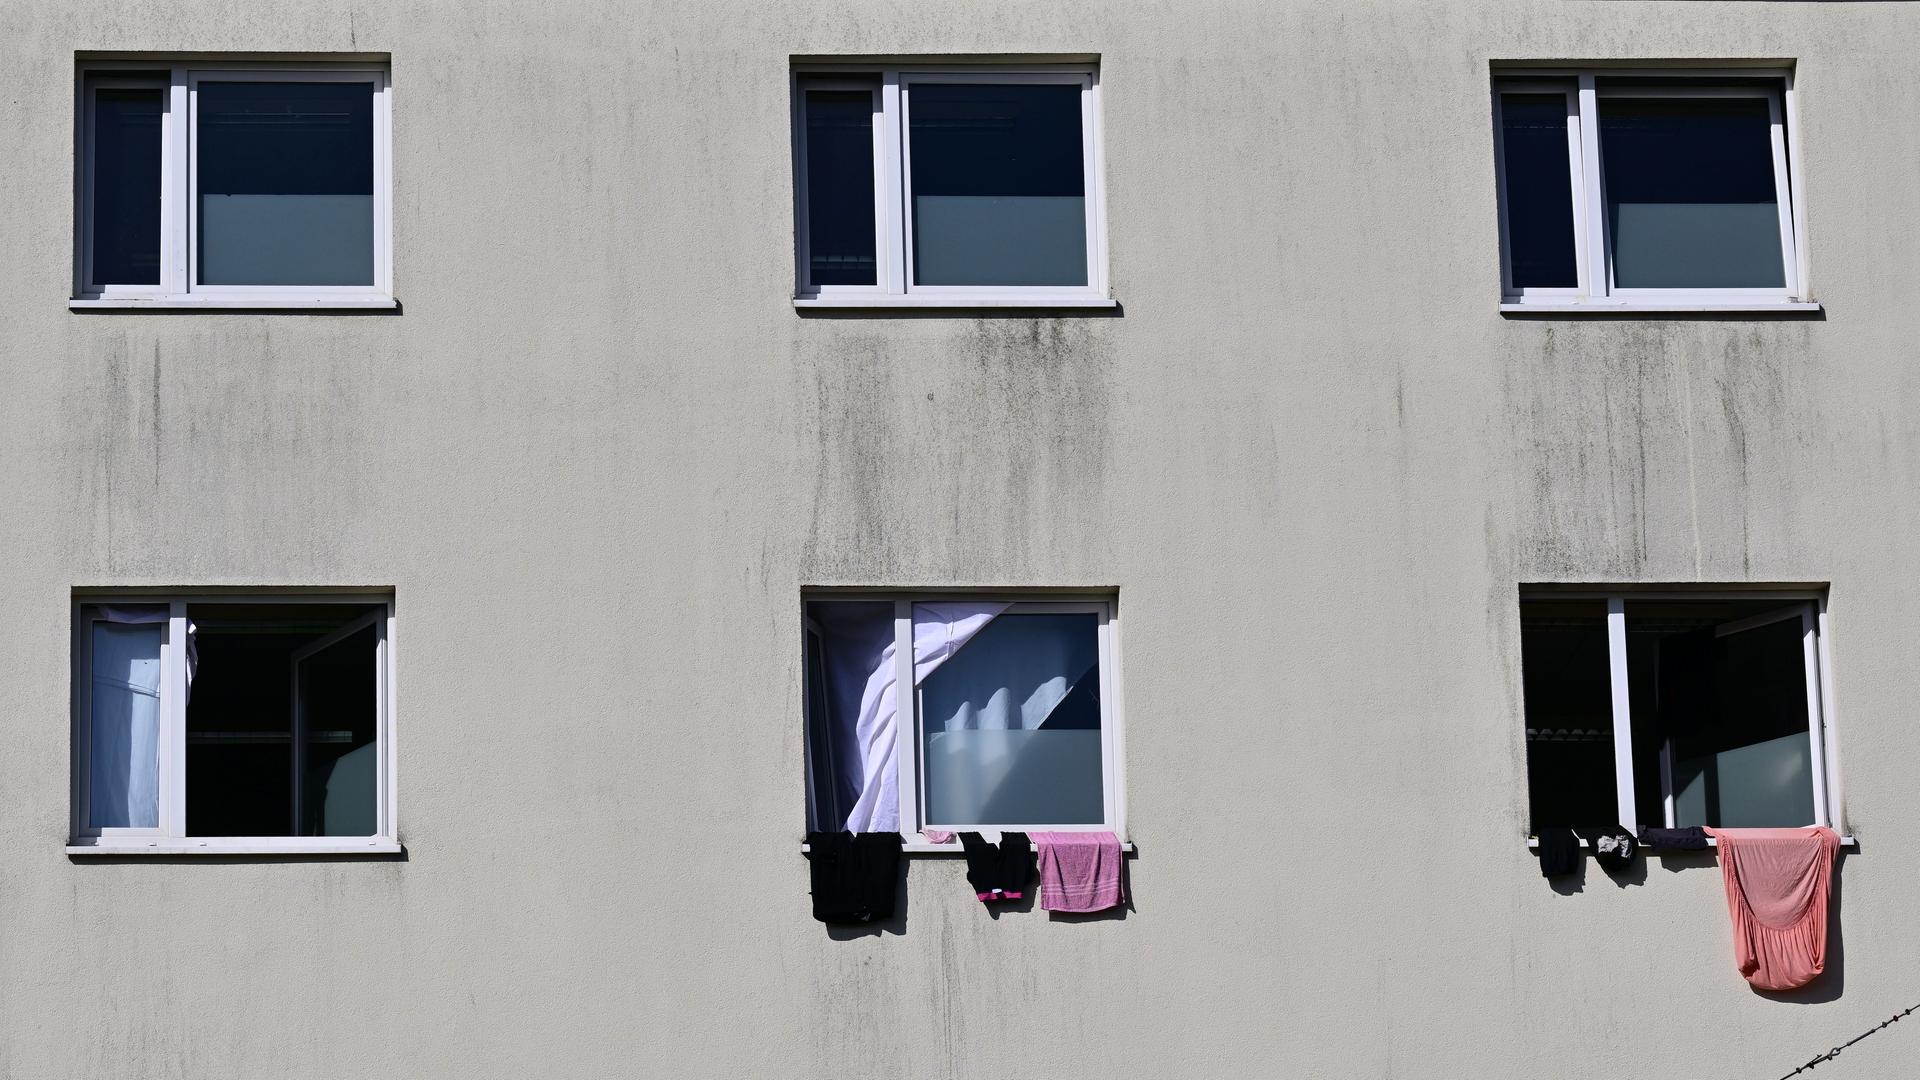 Die Landeserstaufnahmeeinrichtung auf dem Suhler Friedberg. Eine triste graue Häuserfassade mit Fenstern, aus denen einige Kleidungsstücke heraushängen. 